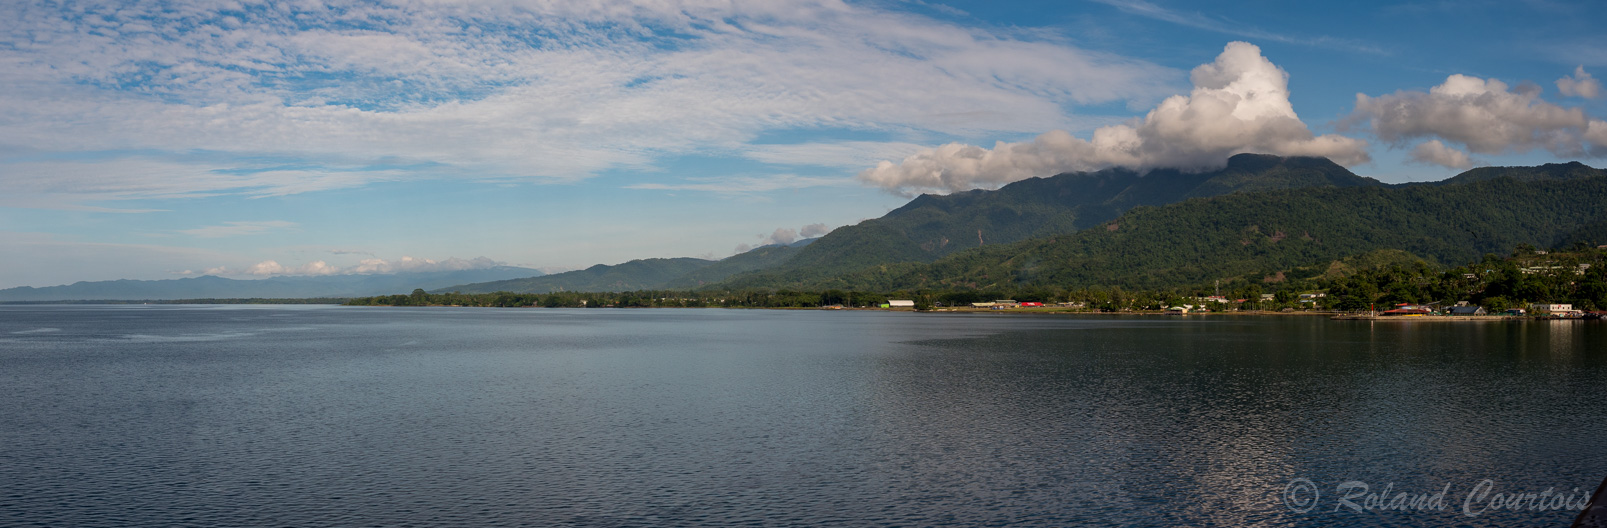 Alotau, capitale de Milne Bay, est située sur la côte sud-est de la Papouasie-Nouvelle-Guinée.